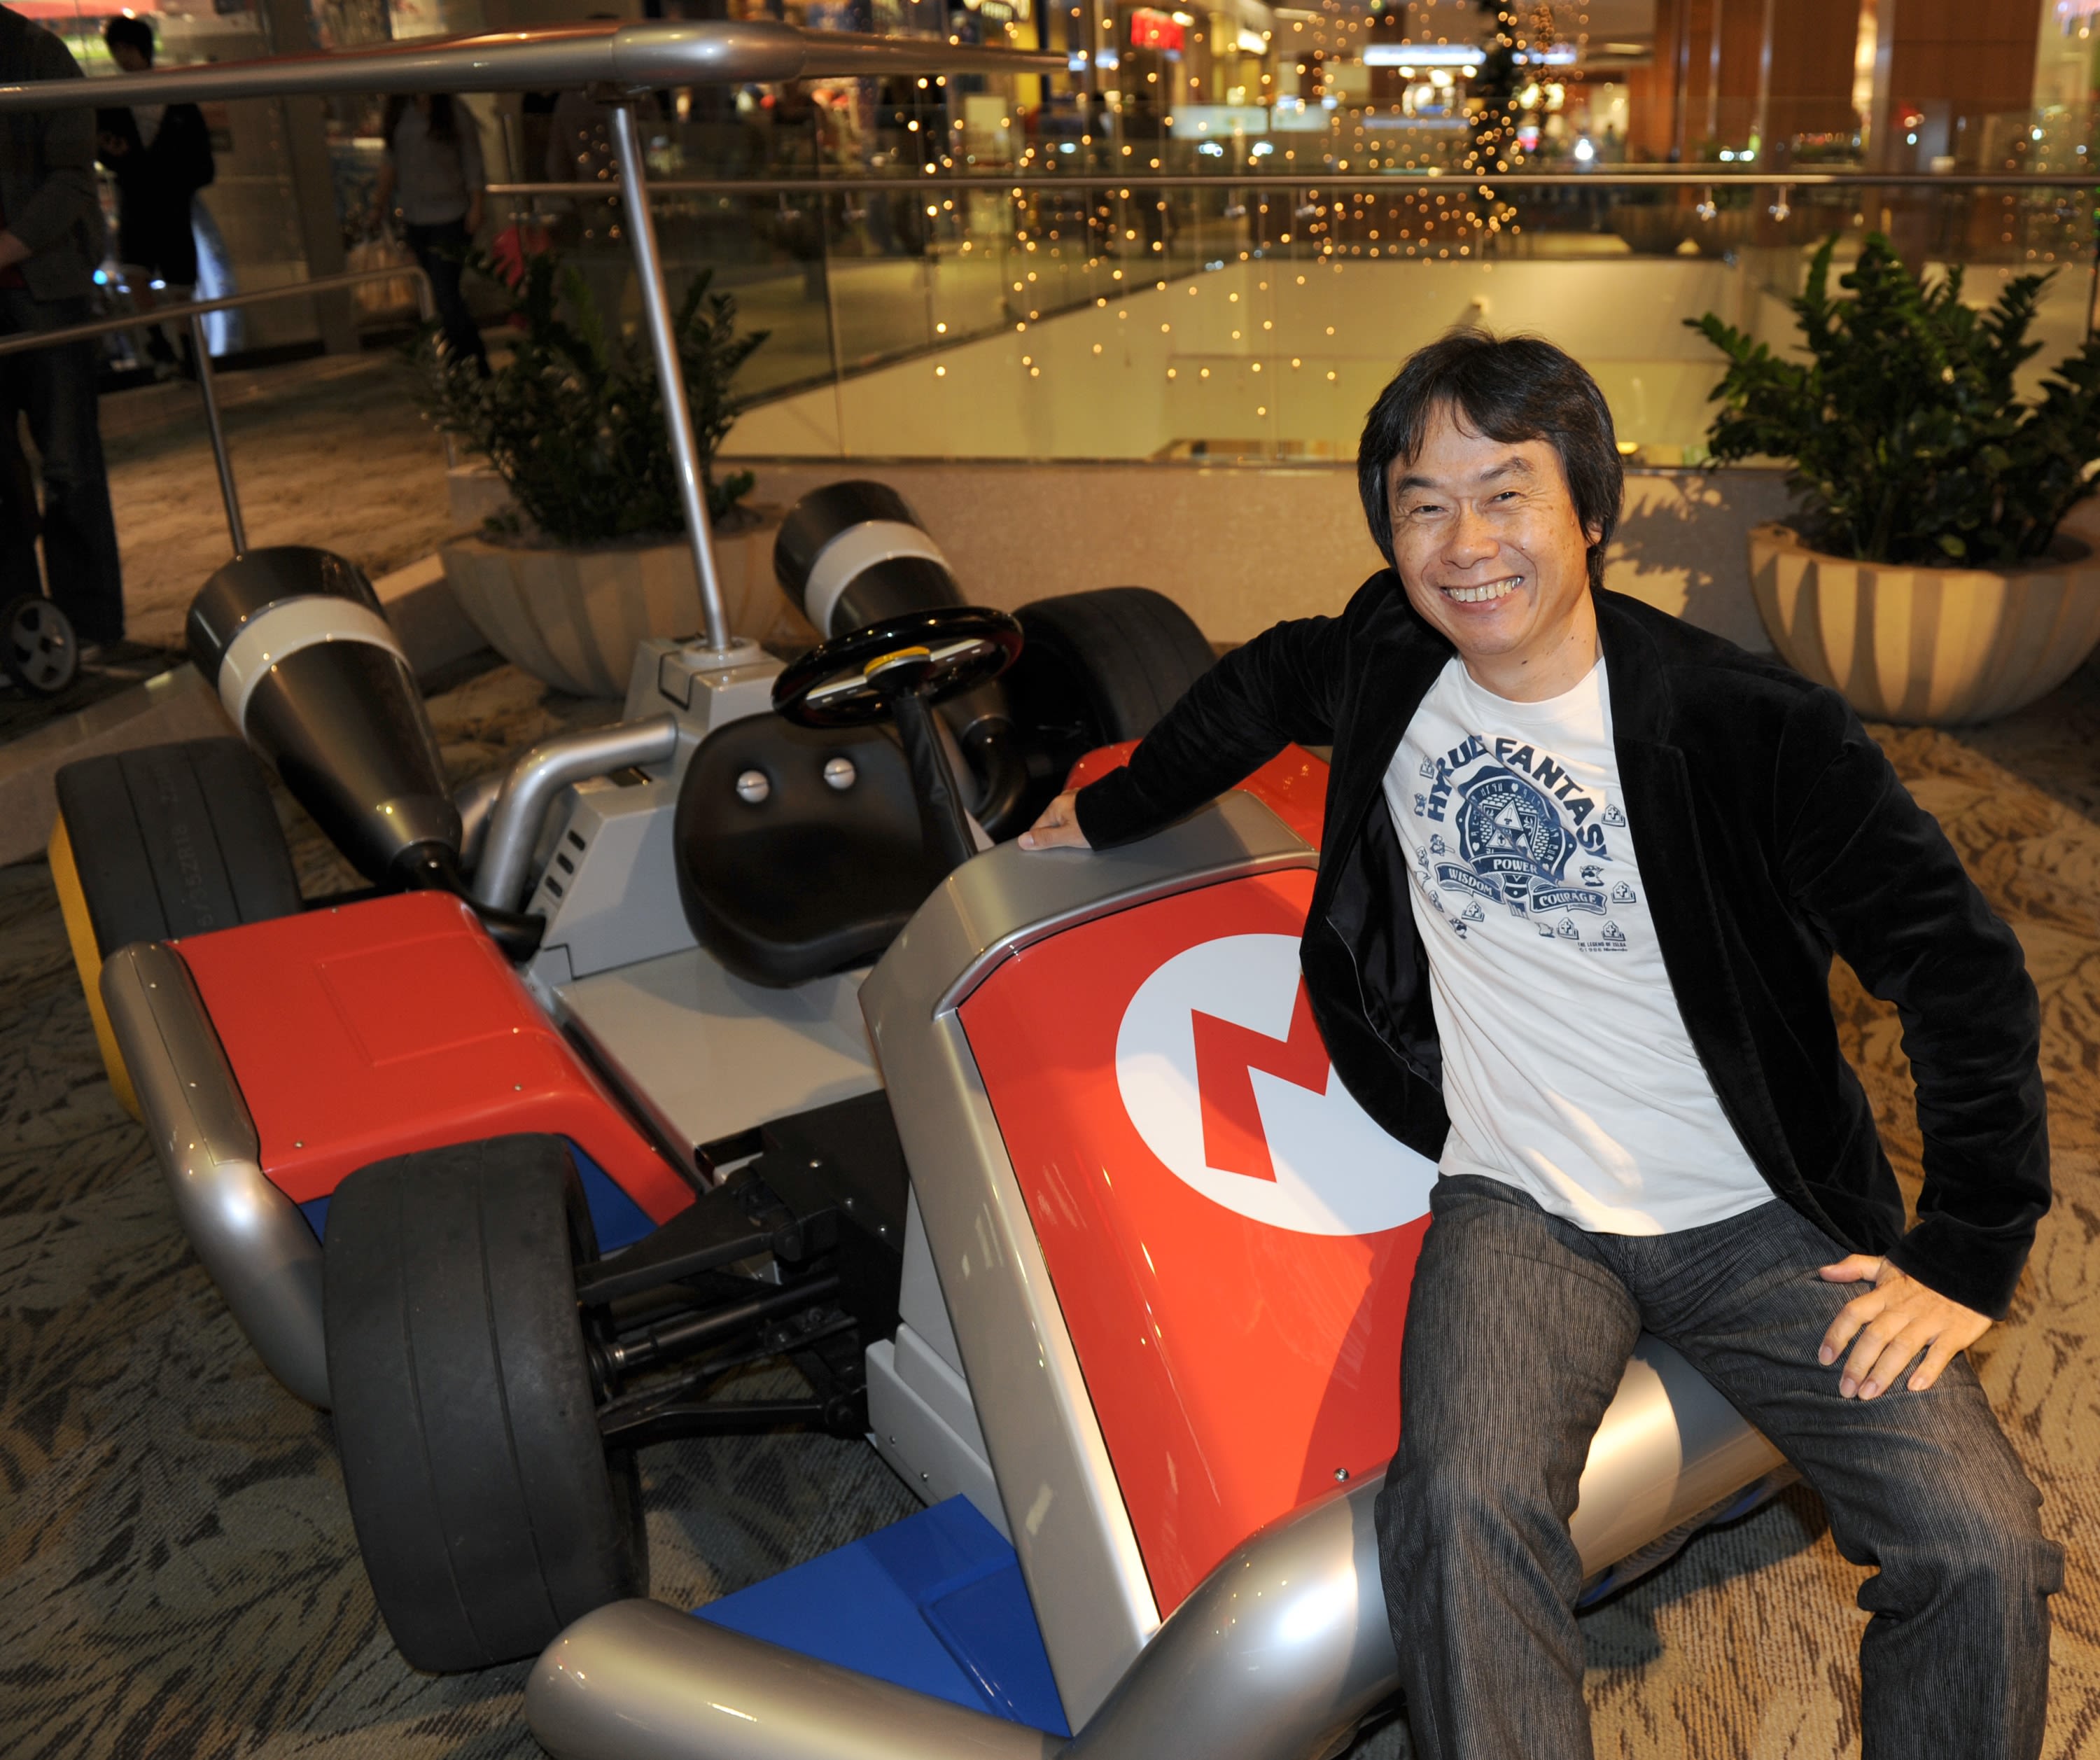 Wii U: Criador de Mario, Shigeru Miyamoto, está trabalhando em